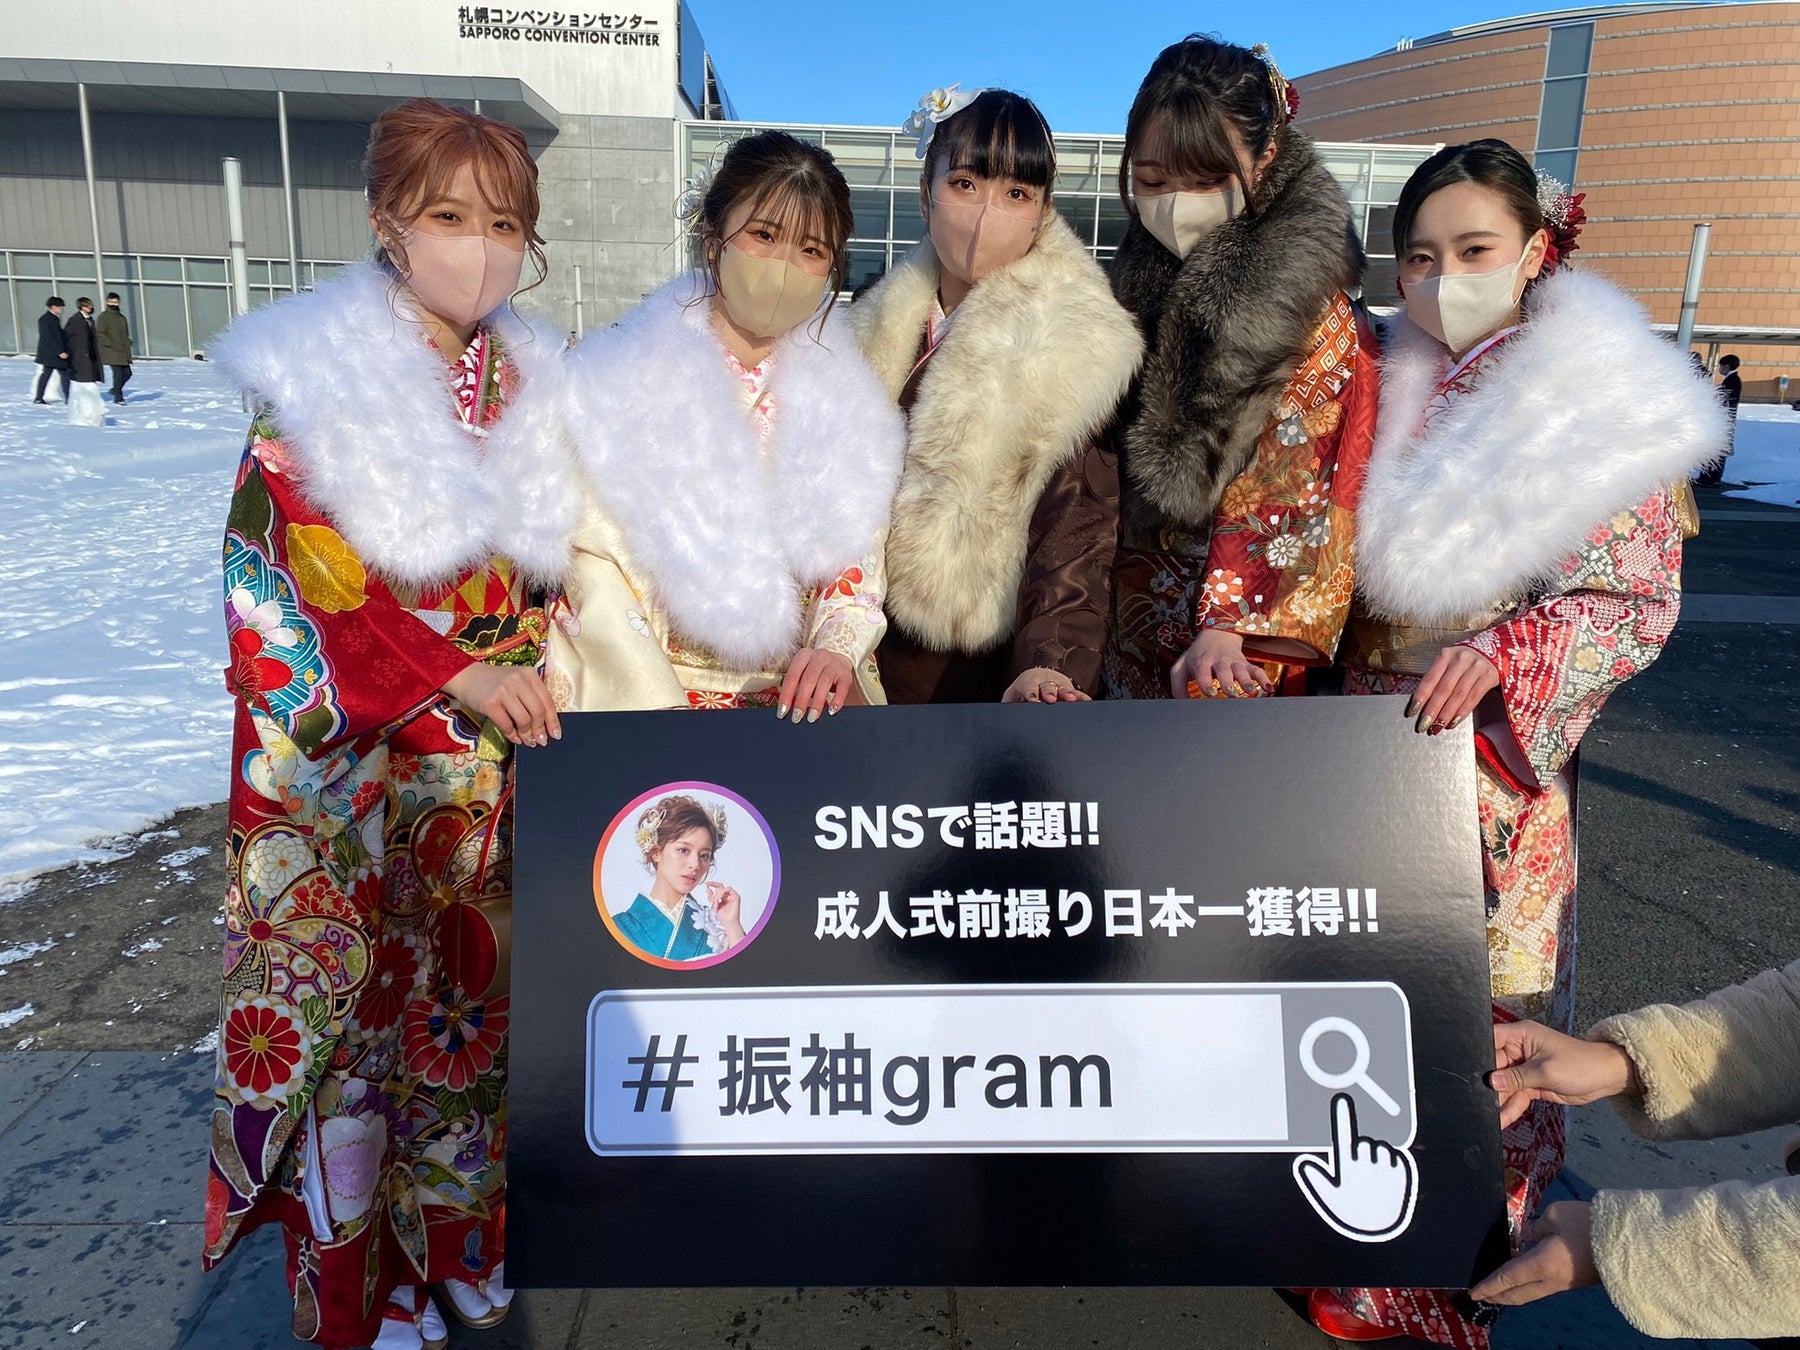 地元白石区の新成人の笑顔を残したい『#振袖gram』北海道札幌市白石区振袖記念写真プロジェクト企画のサブ画像7